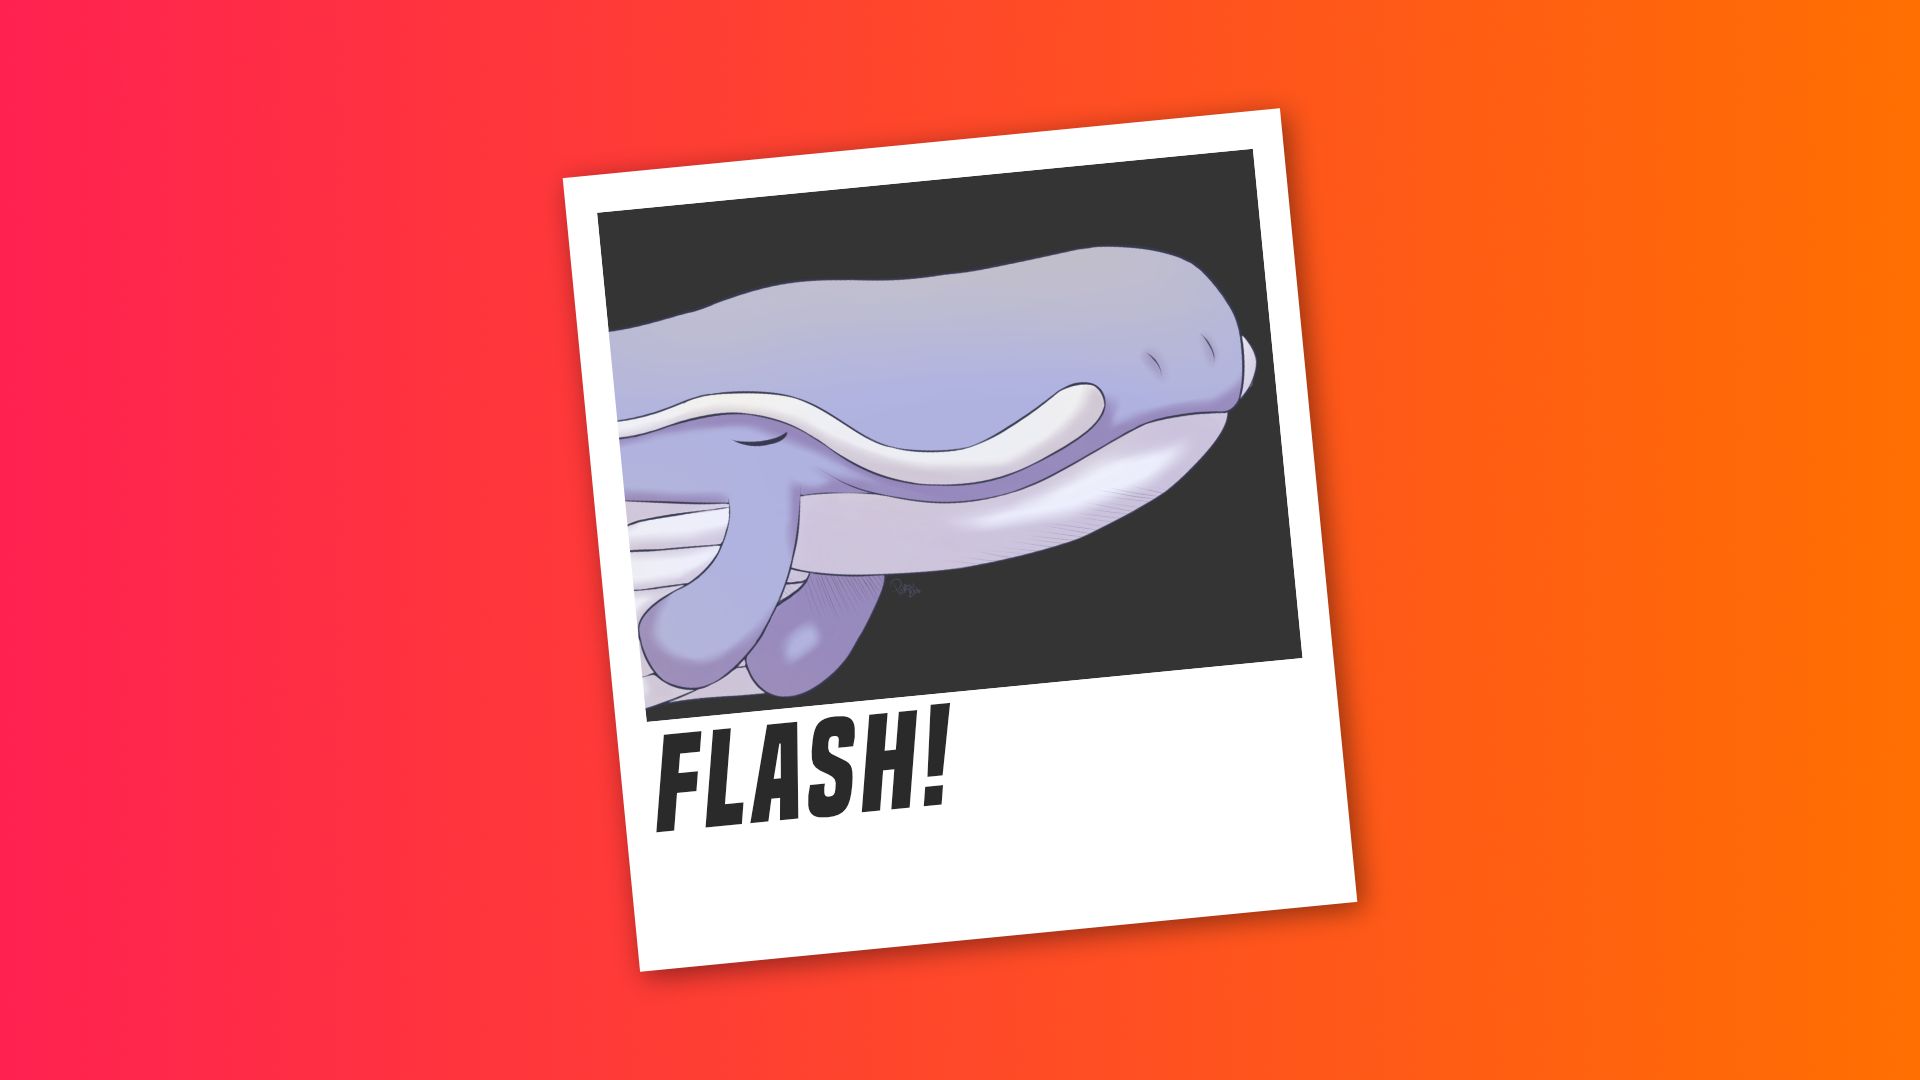  Flash! - Cachasphere : le Géant des airs